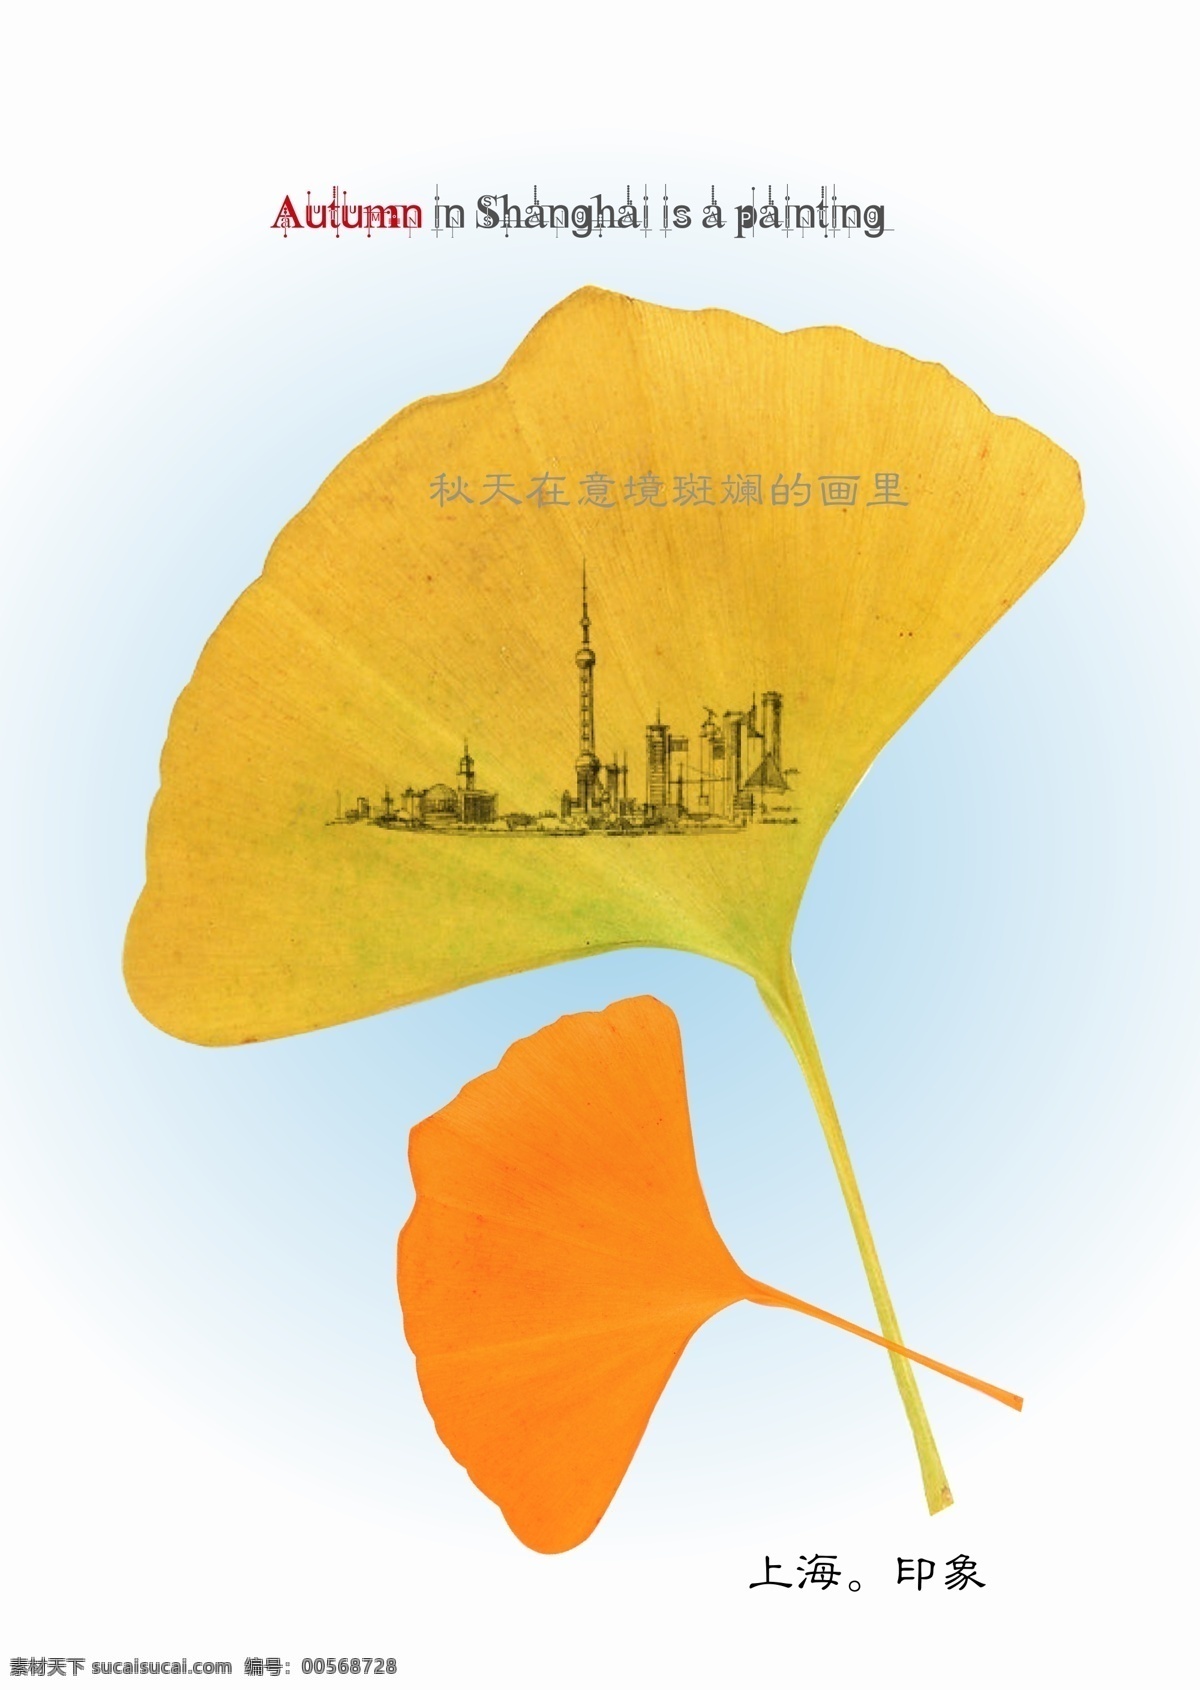 上海 城市 印象 淡蓝色背景 秋天 银杏叶 上海城市印象 上海印象 副 画 矢量 矢量图